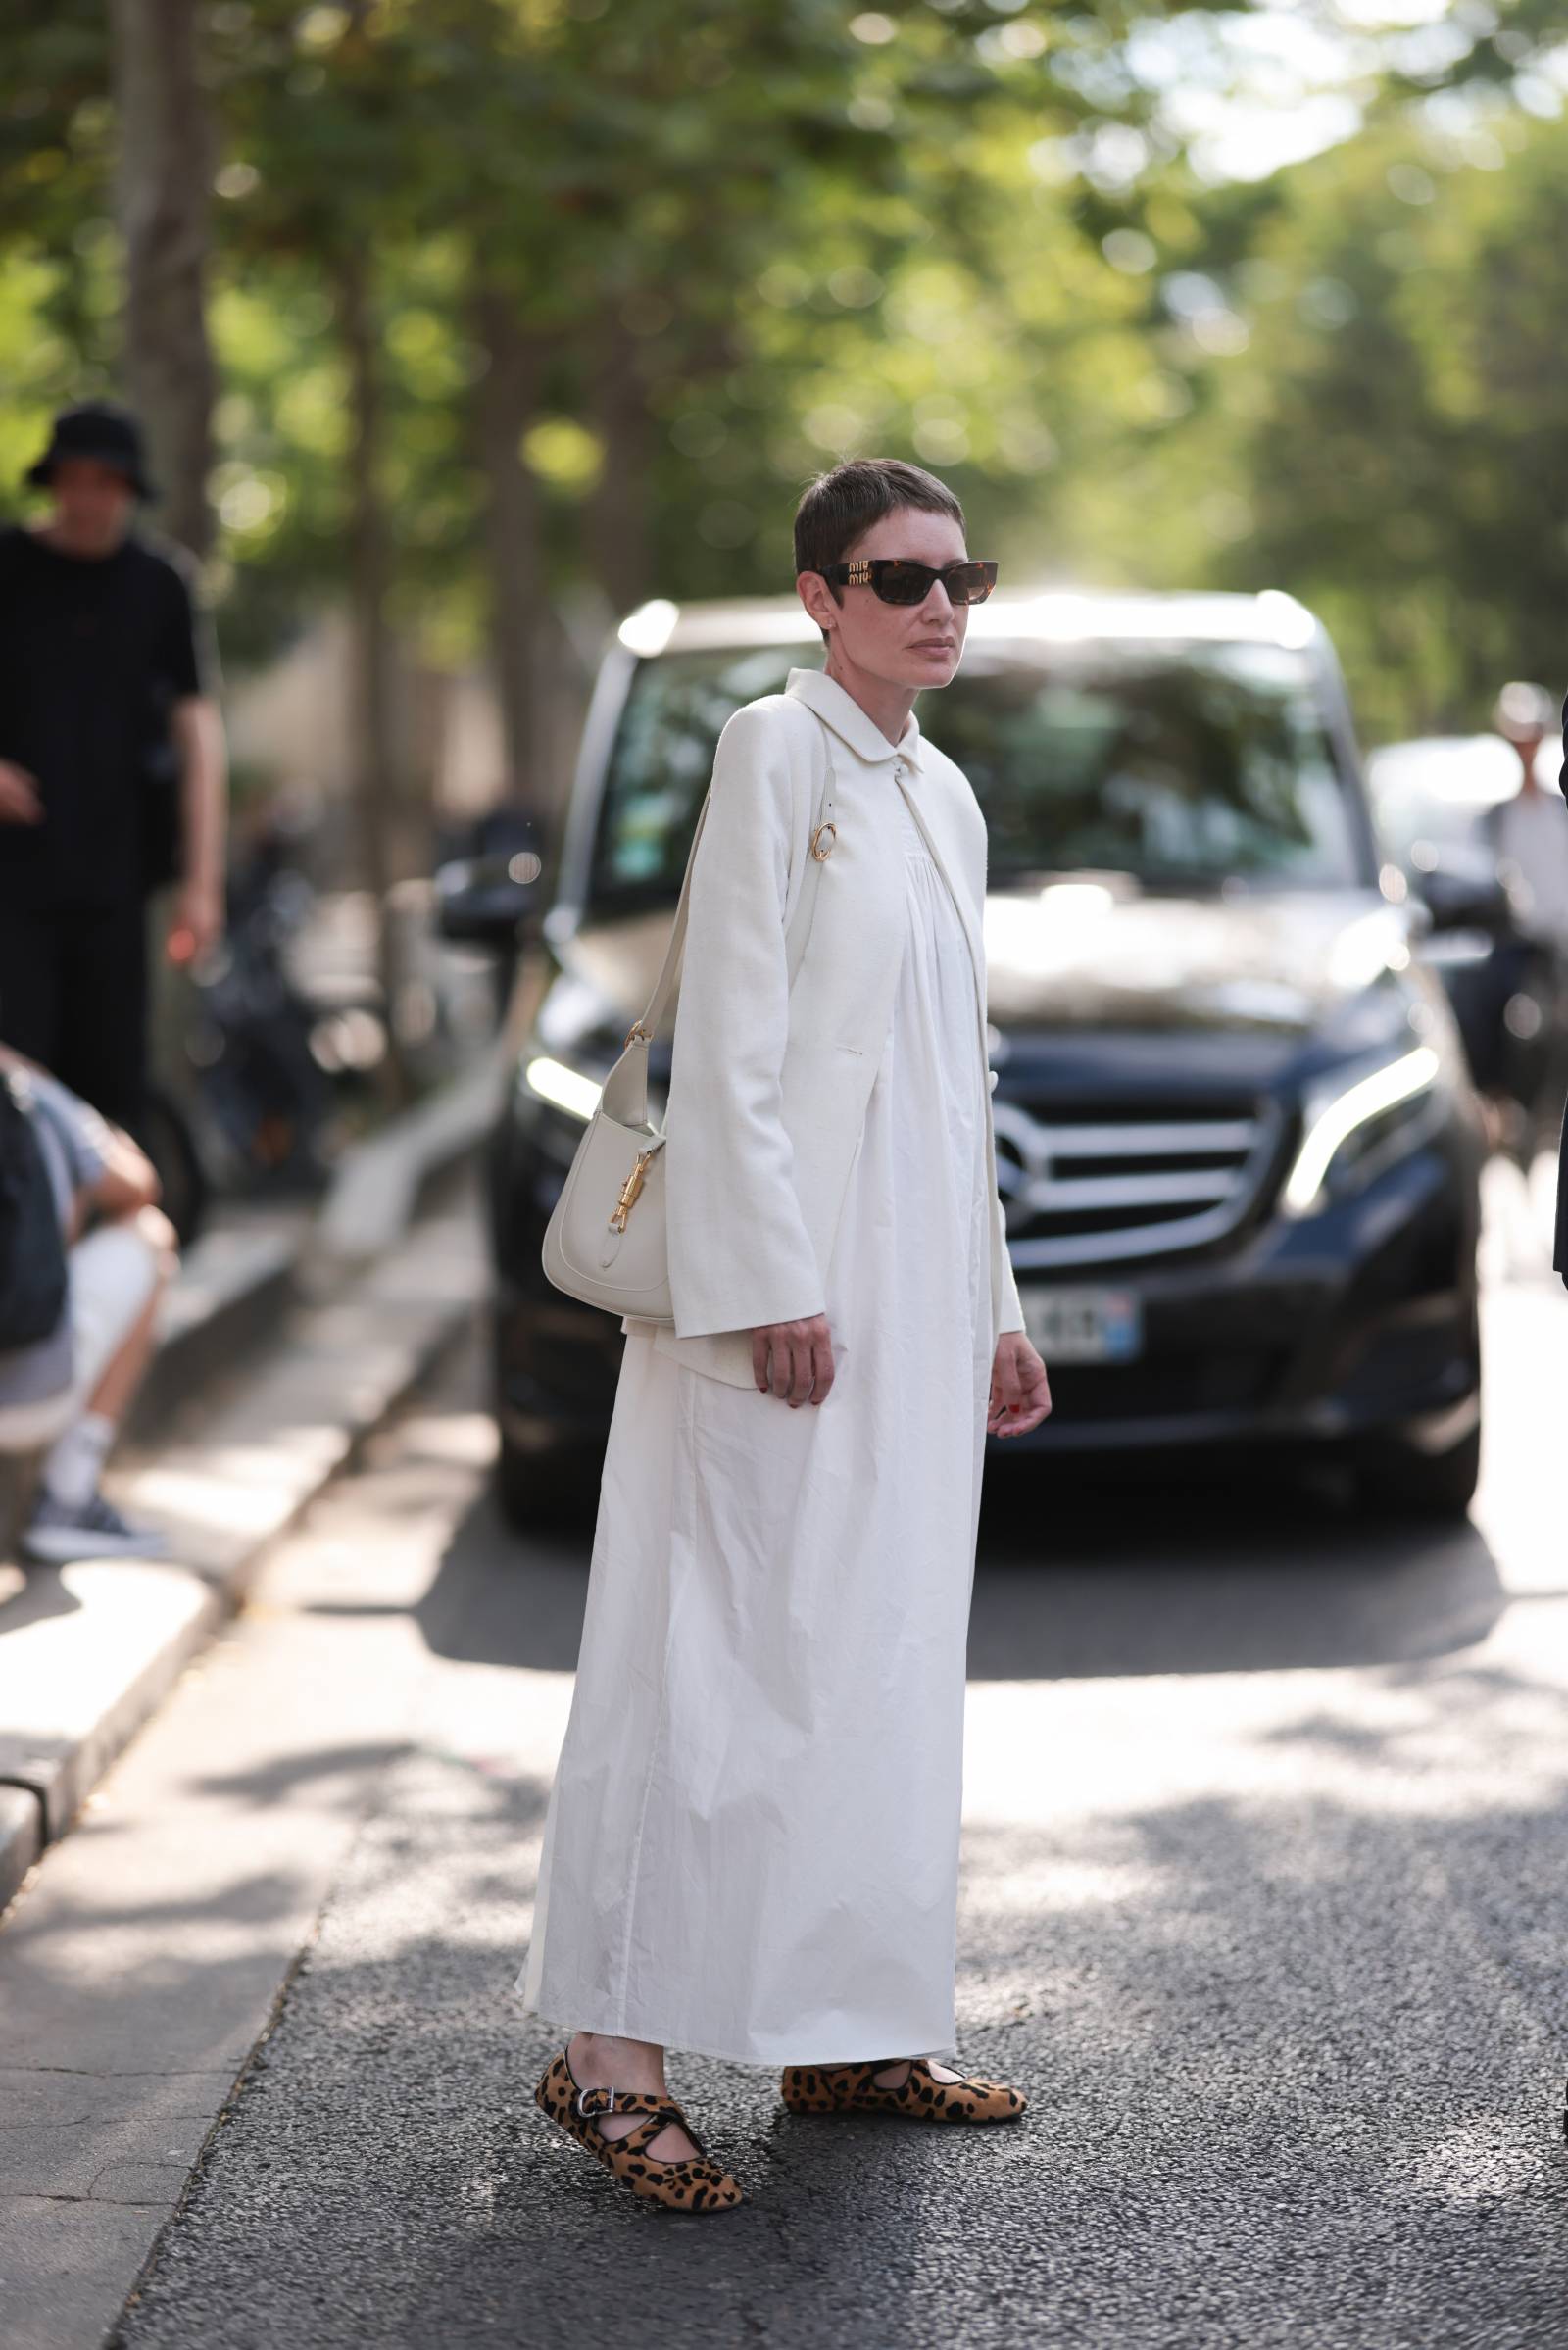 Buty w zwierzęcy print dosknale przełamią niewinny charakter białej lnianej sukienki / (Fot. Getty Images)